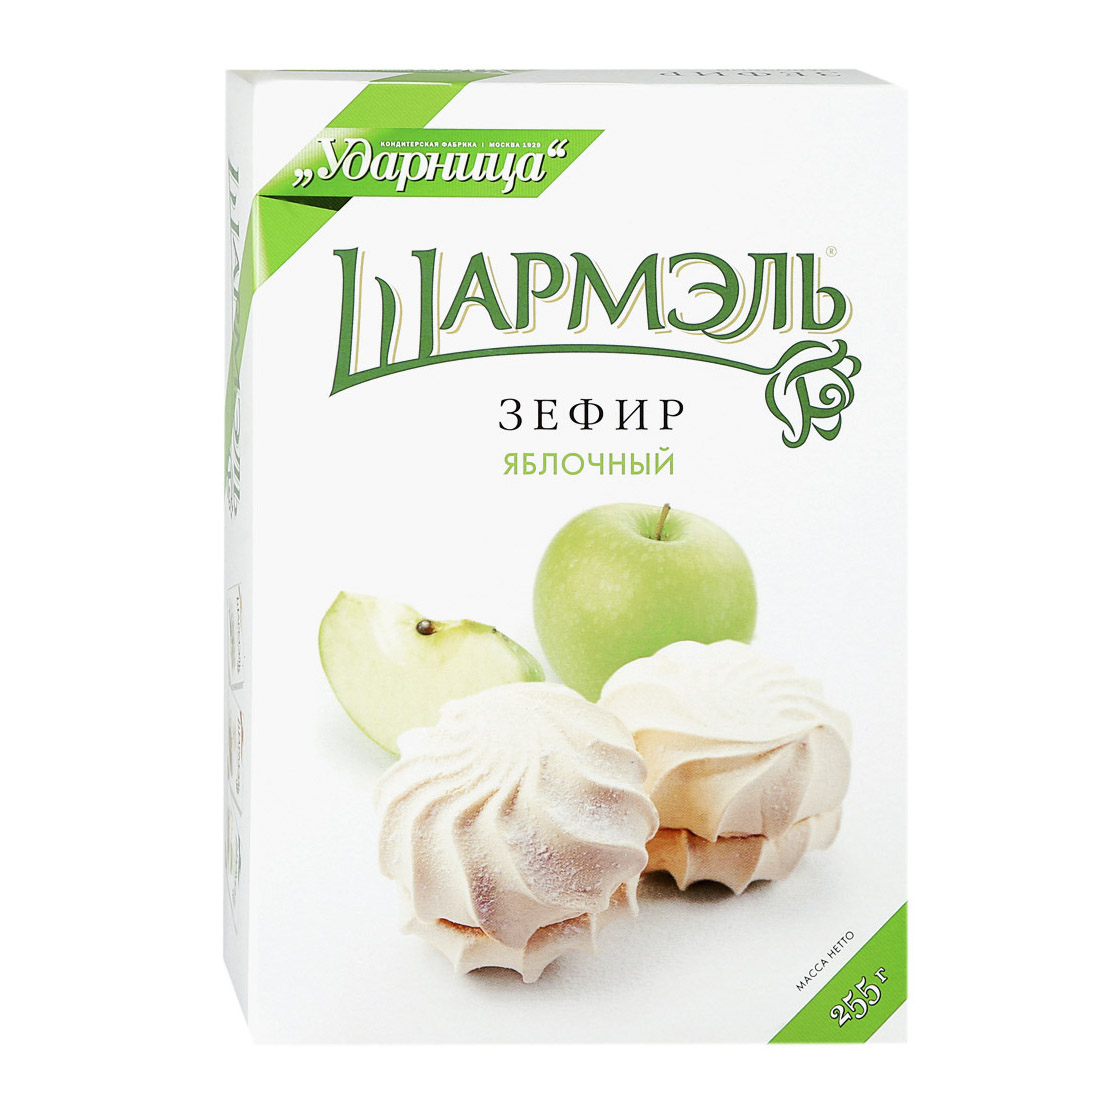 Зефир Шармэль яблочный 255 г зефир шармэль с кофейным вкусом 250 г